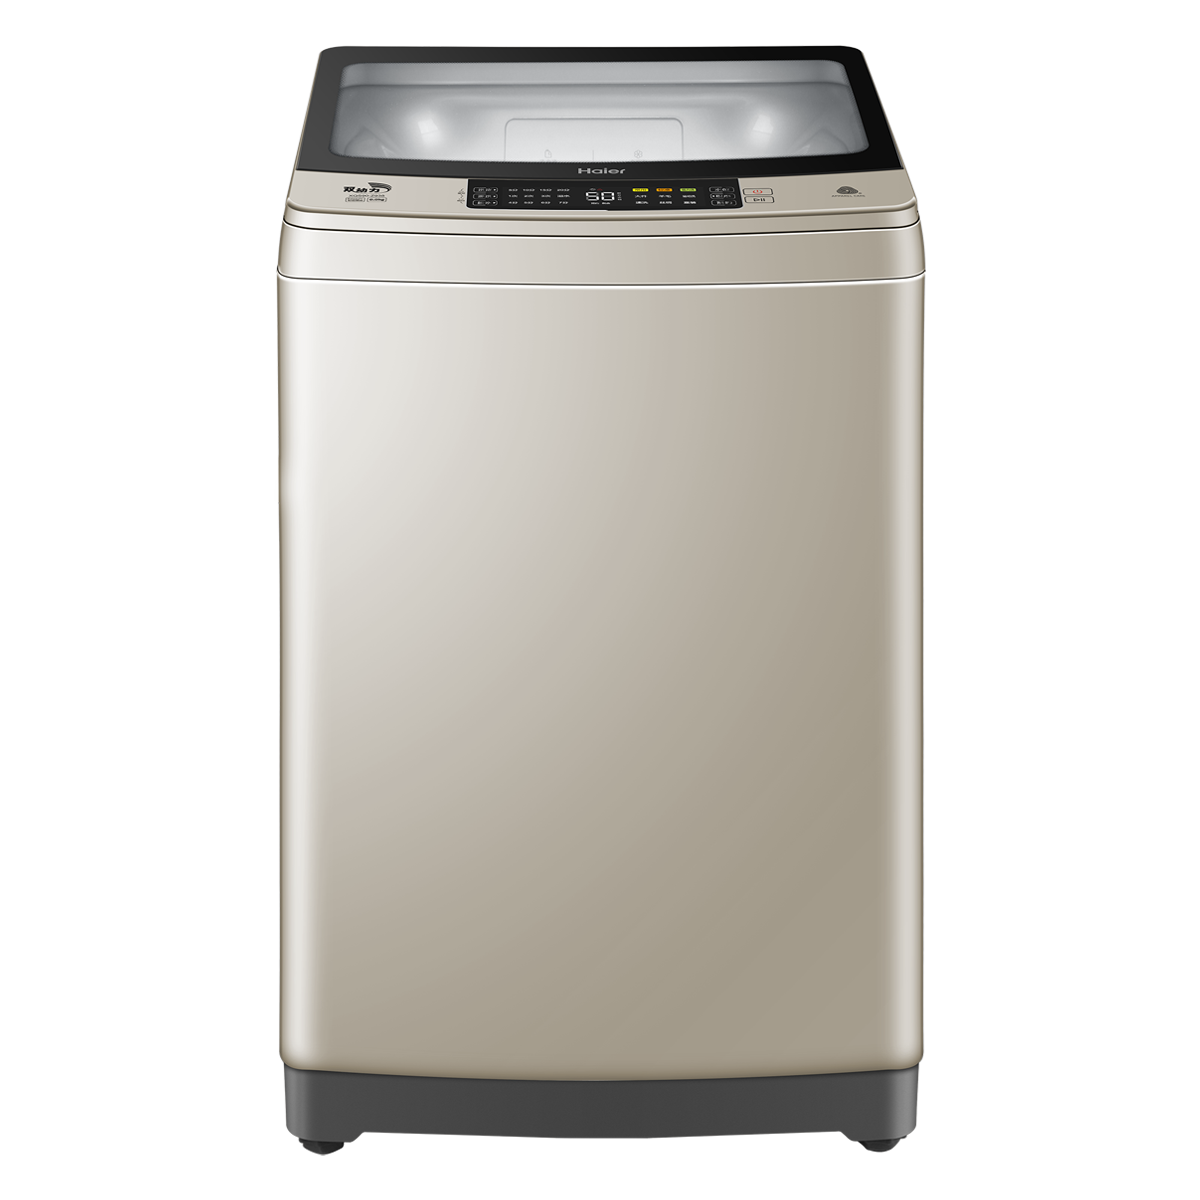 海尔Haier洗衣机 XQS90-Z938 说明书